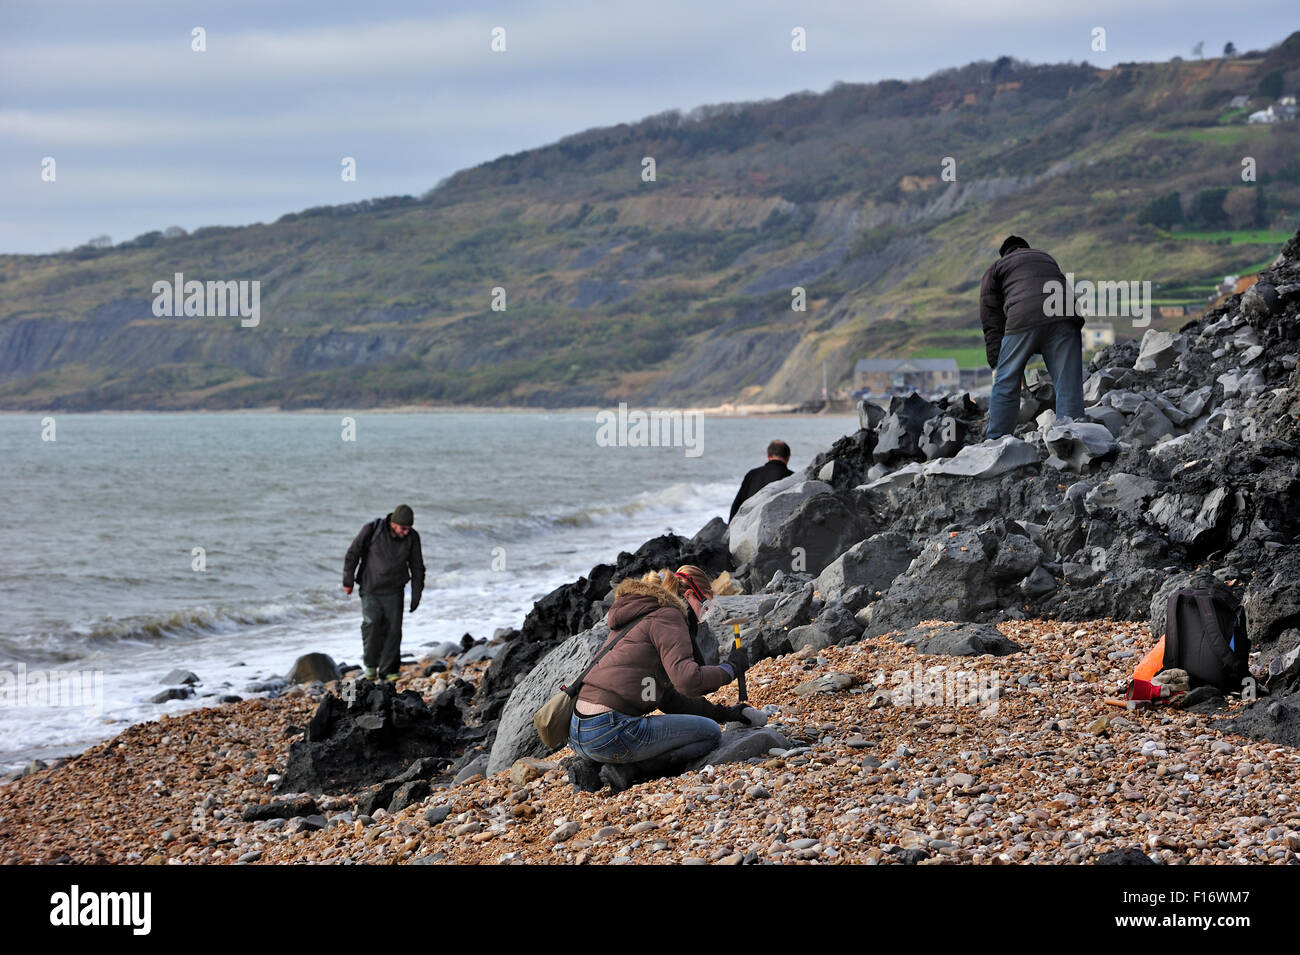 Les paléontologues et les touristes à la recherche de fossiles sur la plage après le glissement de terrain à Black Ven près de Lyme Regis, sur la côte jurassique, Dorset Banque D'Images